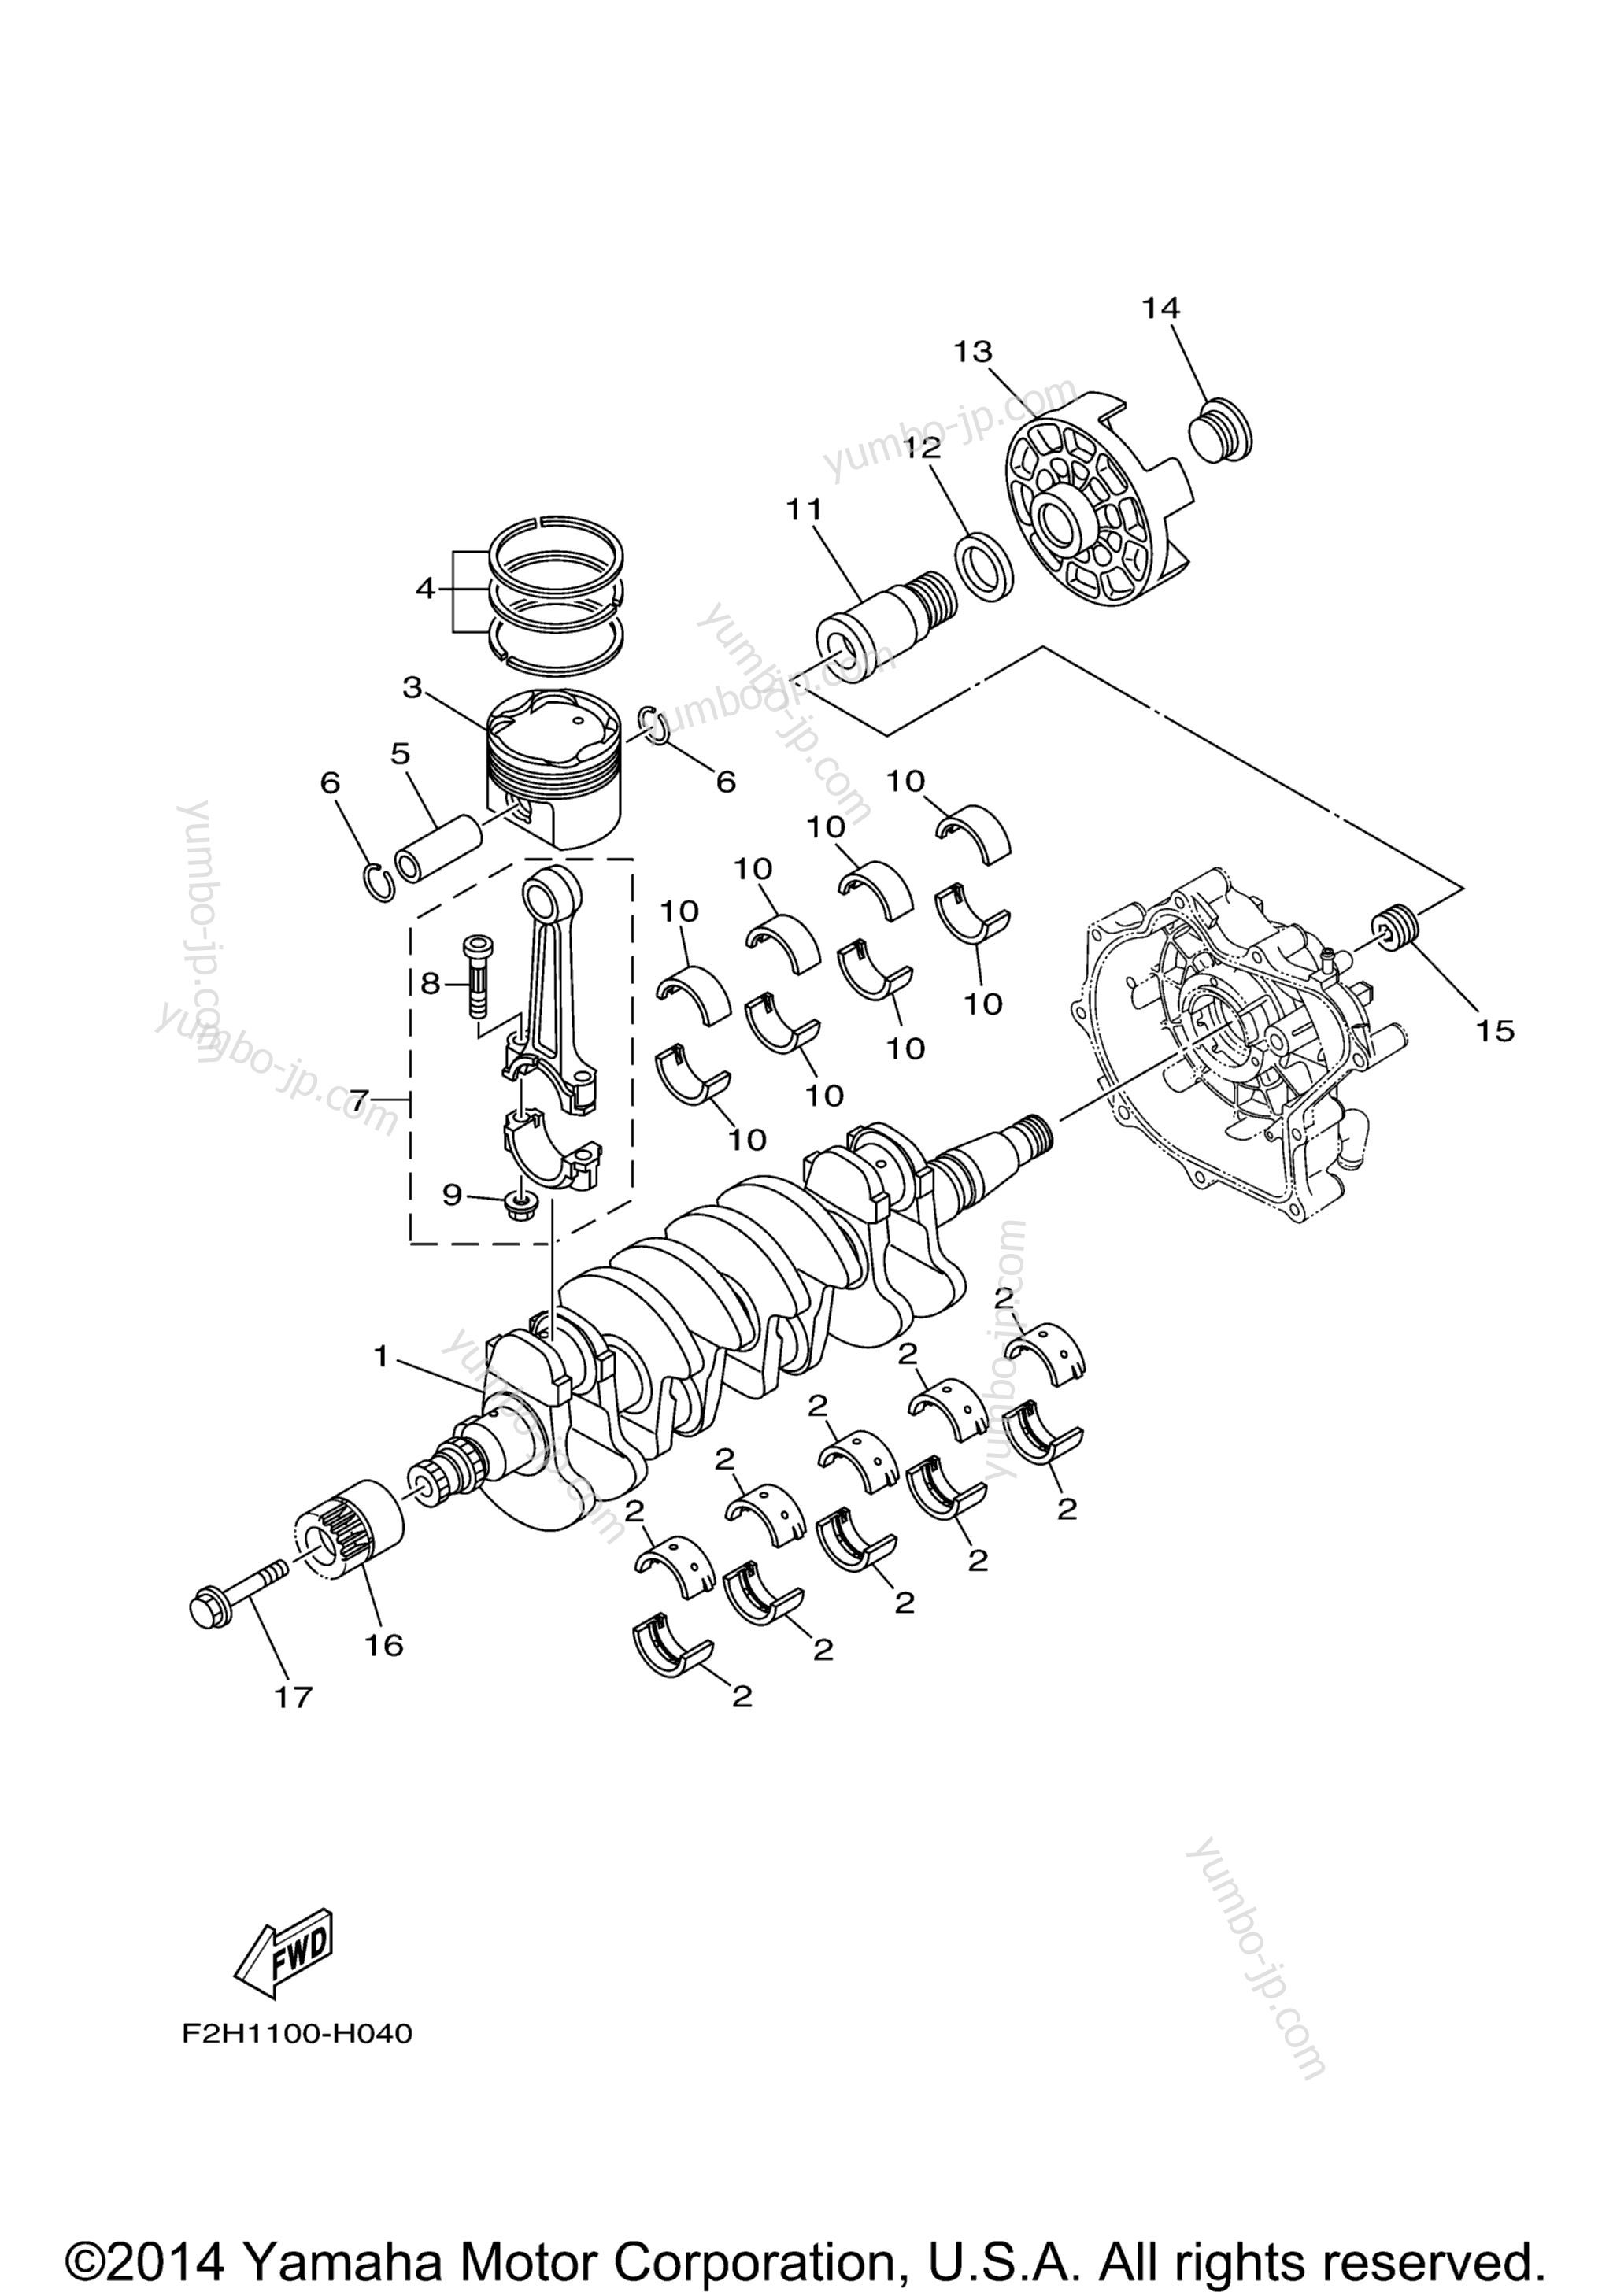 Crankshaft & Piston для катеров YAMAHA SX190 (RX1800CMC) 2013 г.